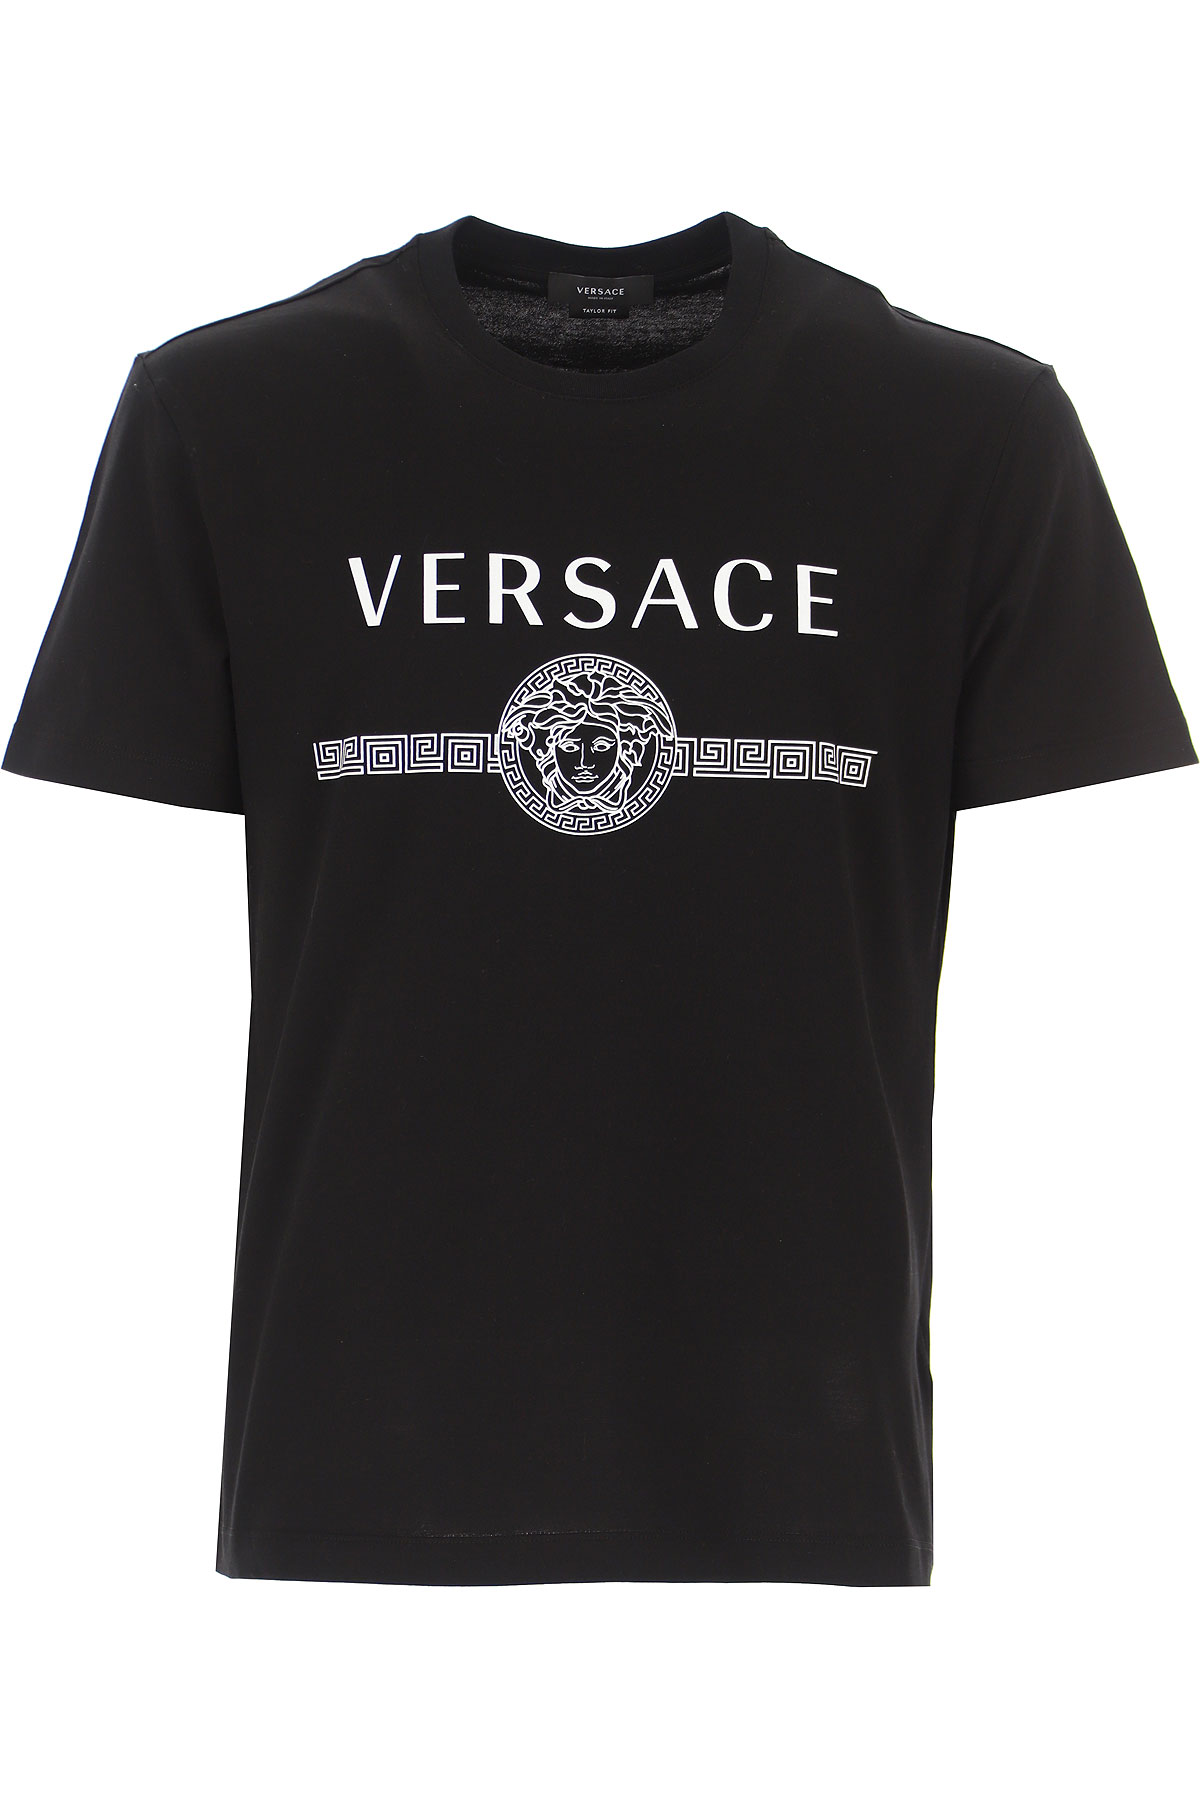 versace t shirt mens white